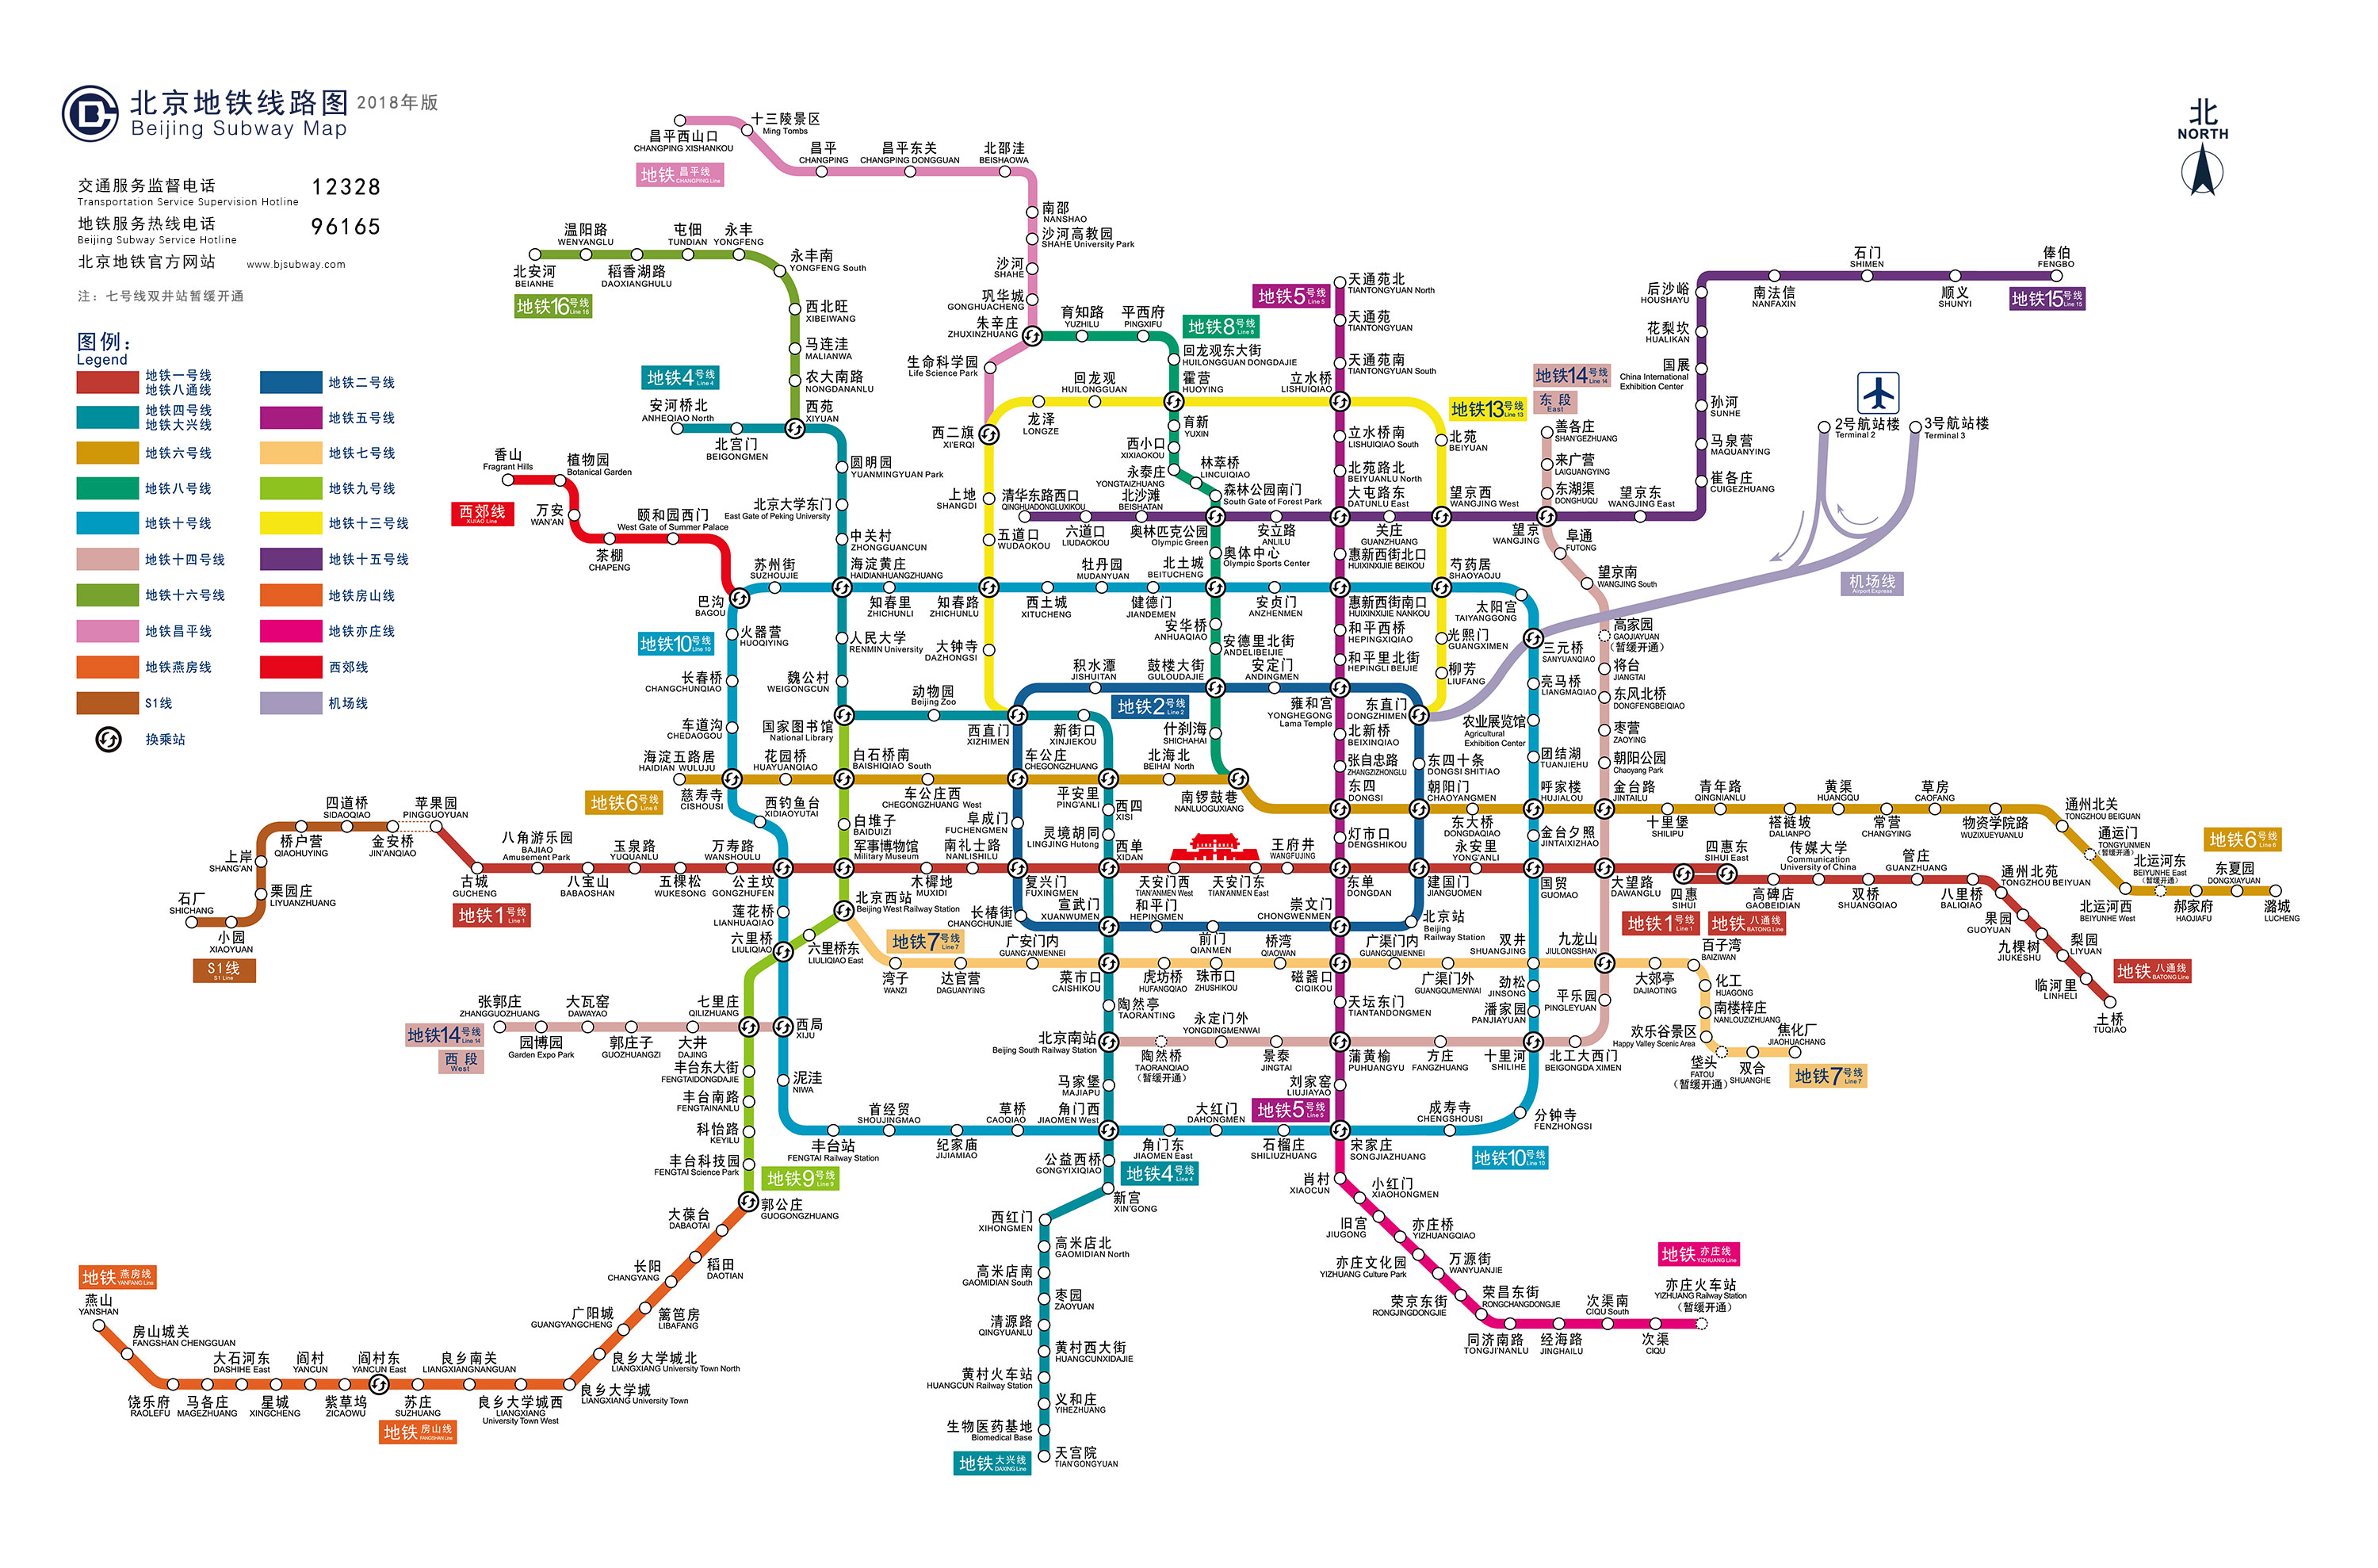 北京地铁运营线路图2018年版发布(图)